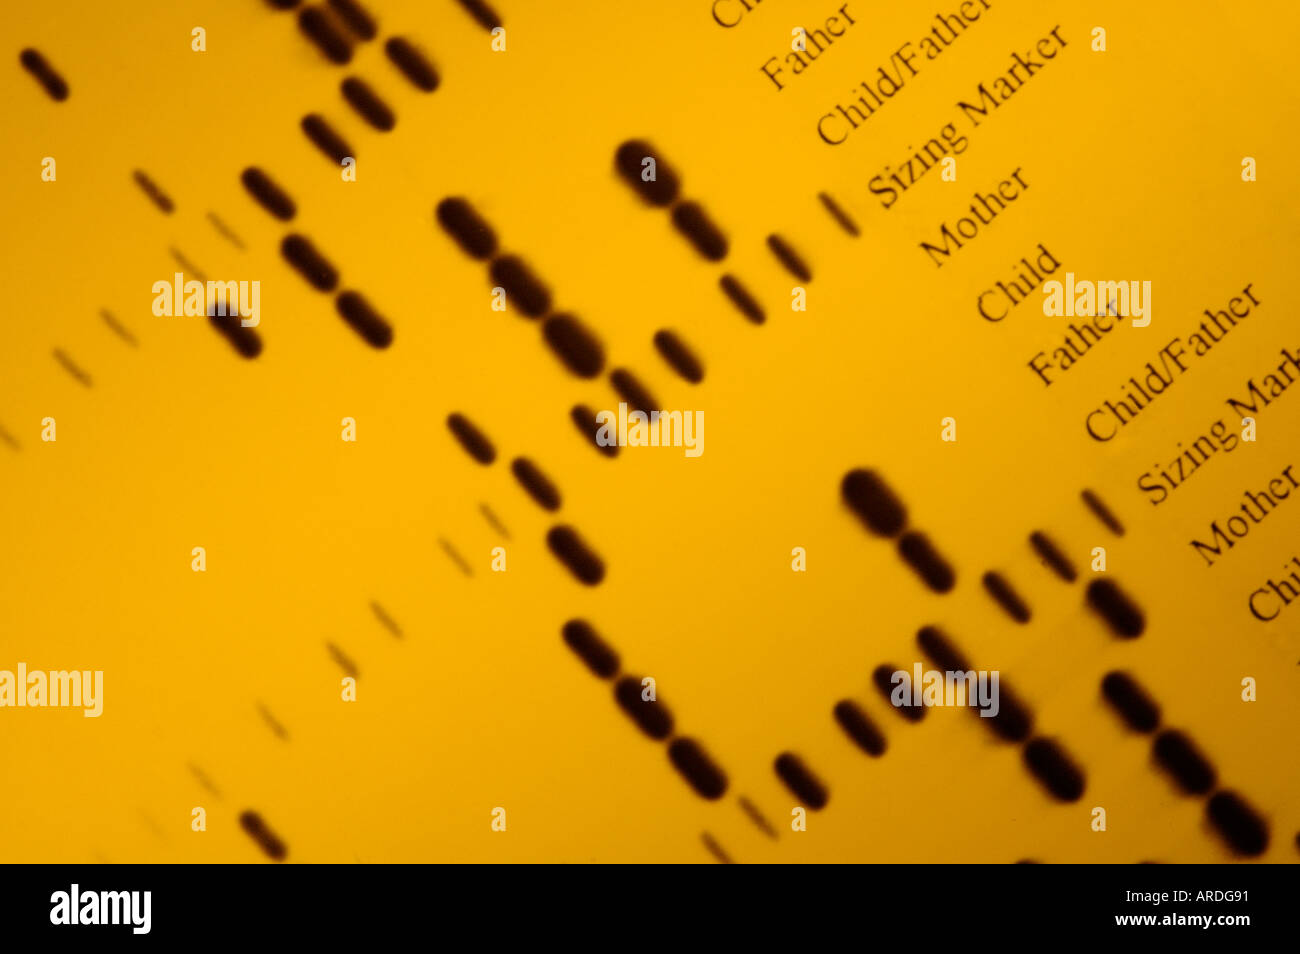 Autoradiografia del 'DNA impronte digitali' dalla determinazione di paternità indagini Foto Stock